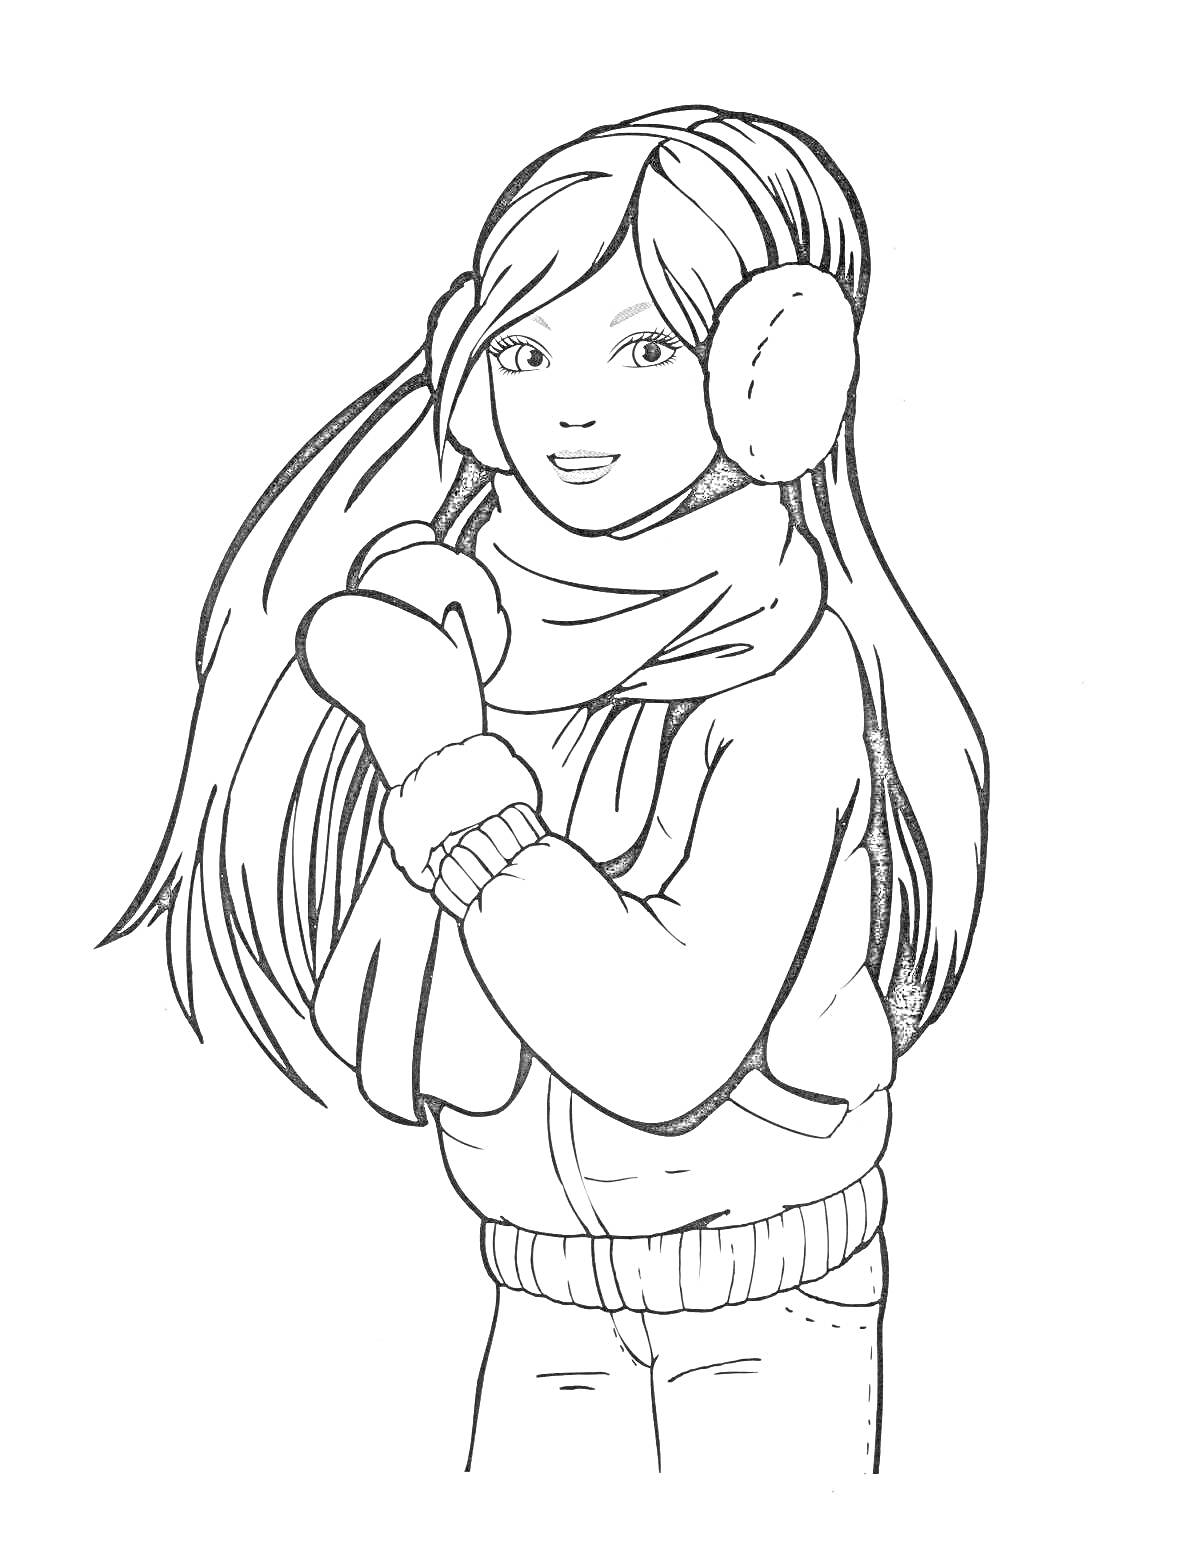 Раскраска Девочка с длинными волосами в зимней одежде с наушниками и шарфом